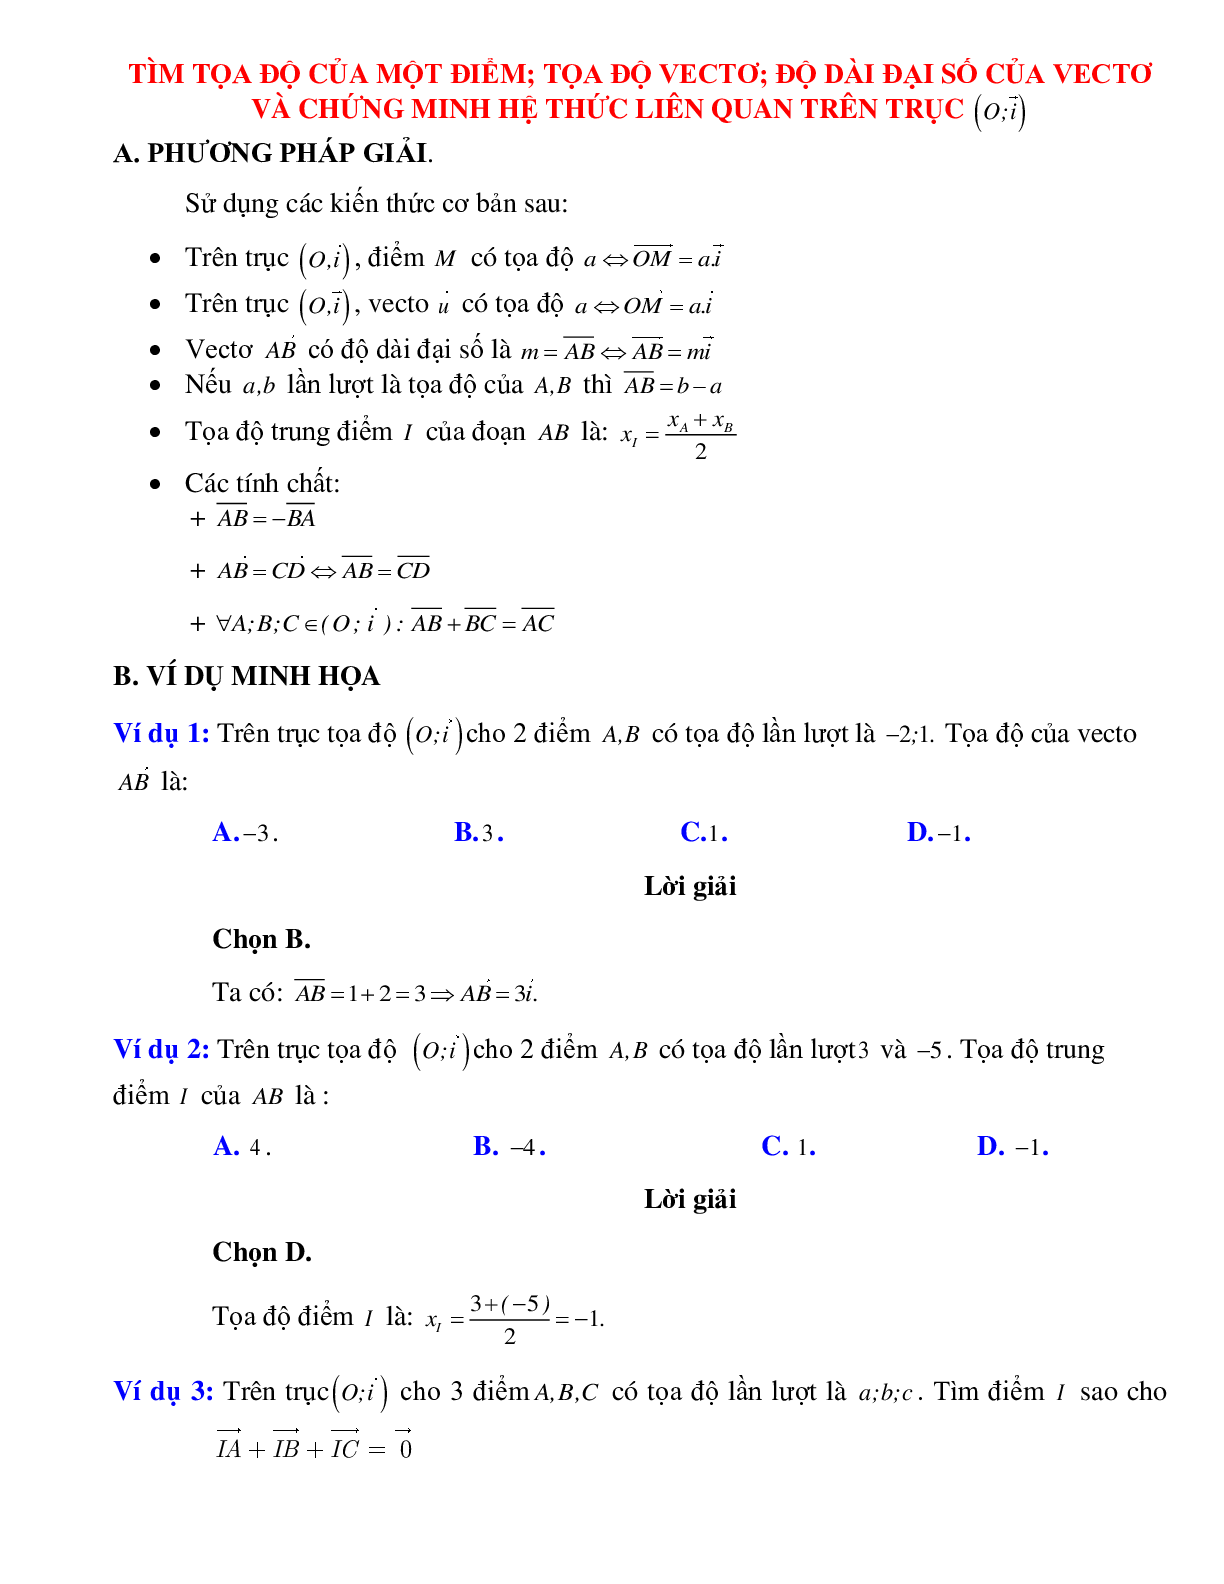 Bài tập Tìm tọa độ của một điểm, tọa độ vecto có đáp án (trang 1)